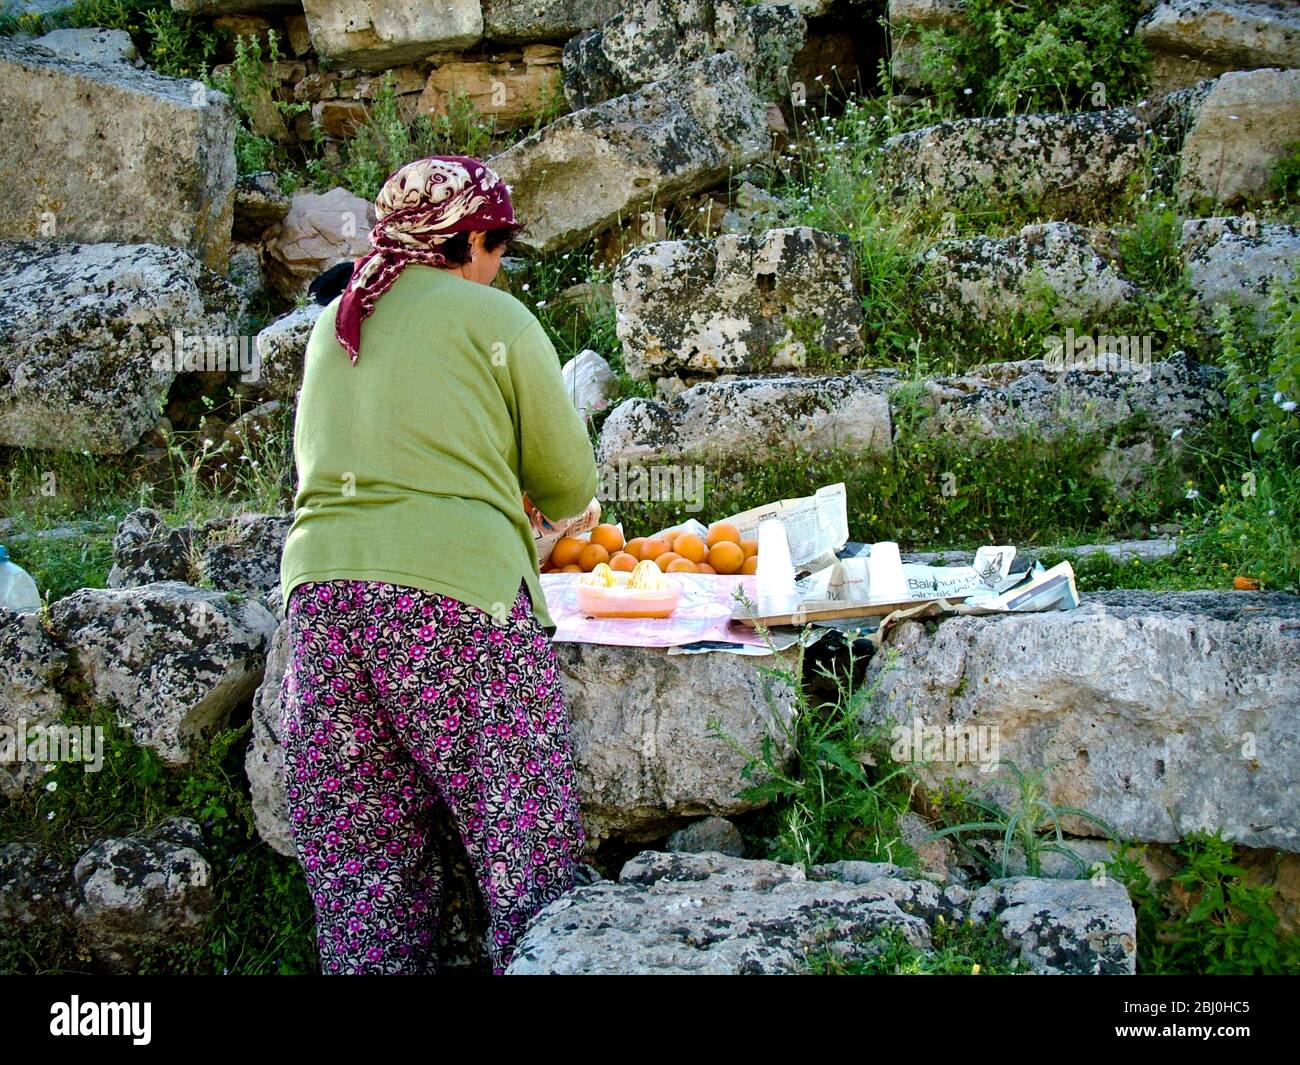 Frau quetscht Orangen, um Gläser mit frischem Saft an Touristen im antiken griechischen Amphitheater im Süden der Türkei zu verkaufen - Stockfoto